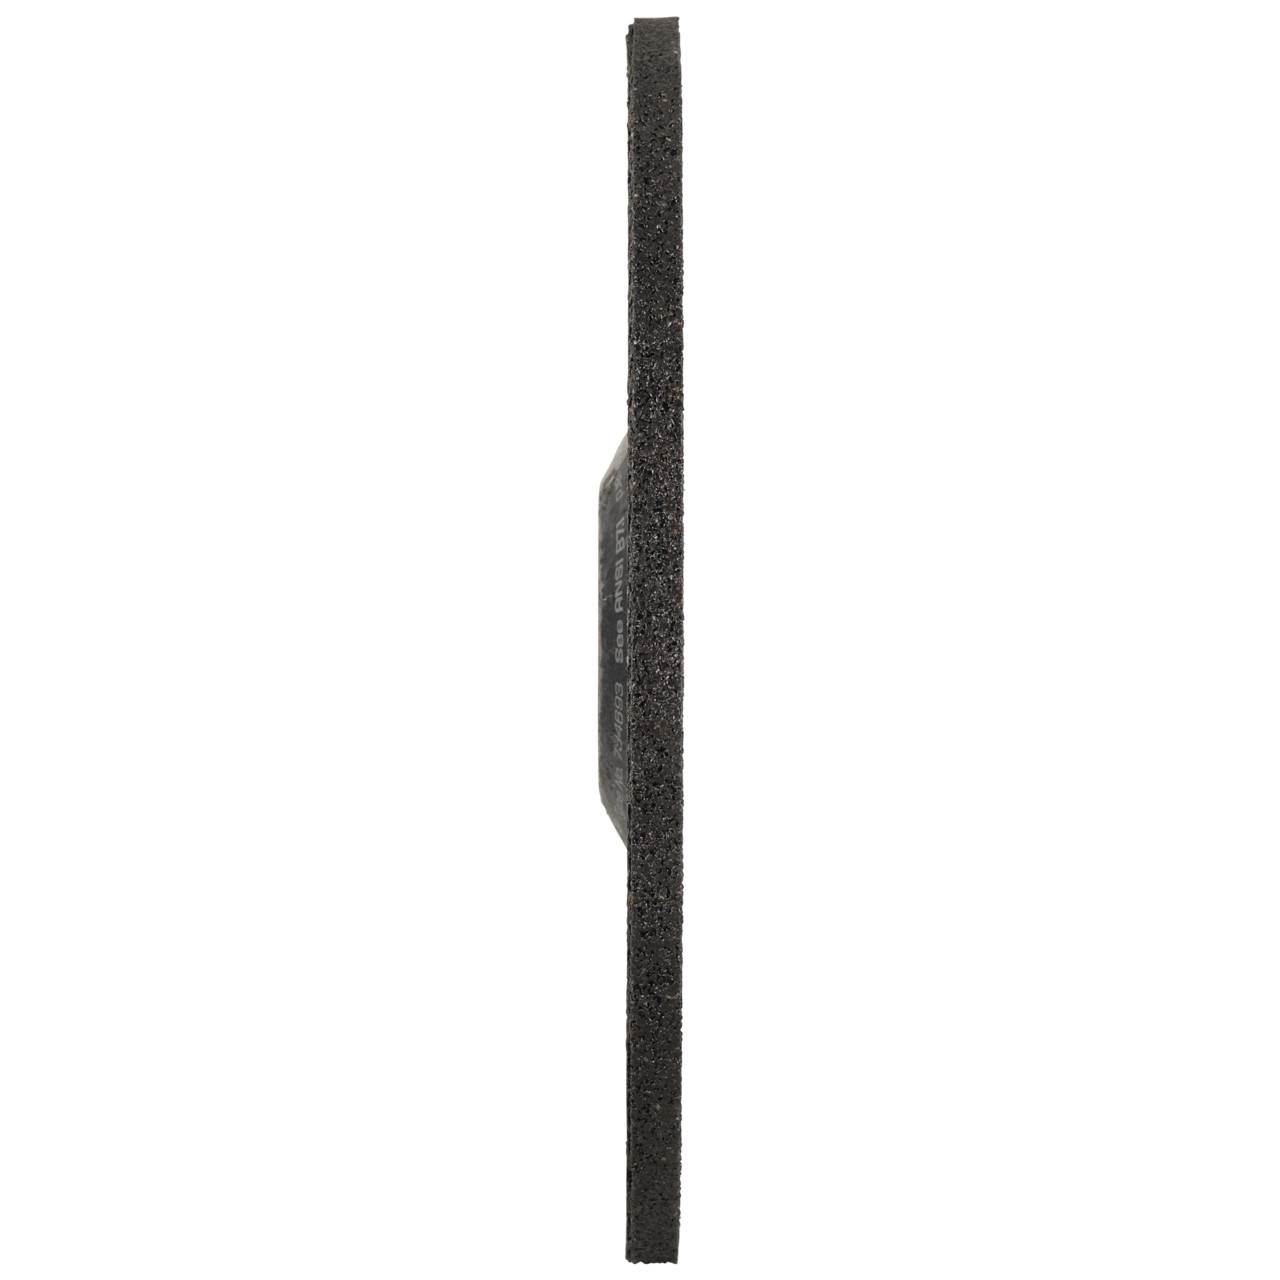 TYROLIT Schruppscheibe DxUxH 125x6x22,23 FASTCUT Basic für Stahl und Edelstahl, Form: 27C - gekröpfte Ausführung, Art. 34468717